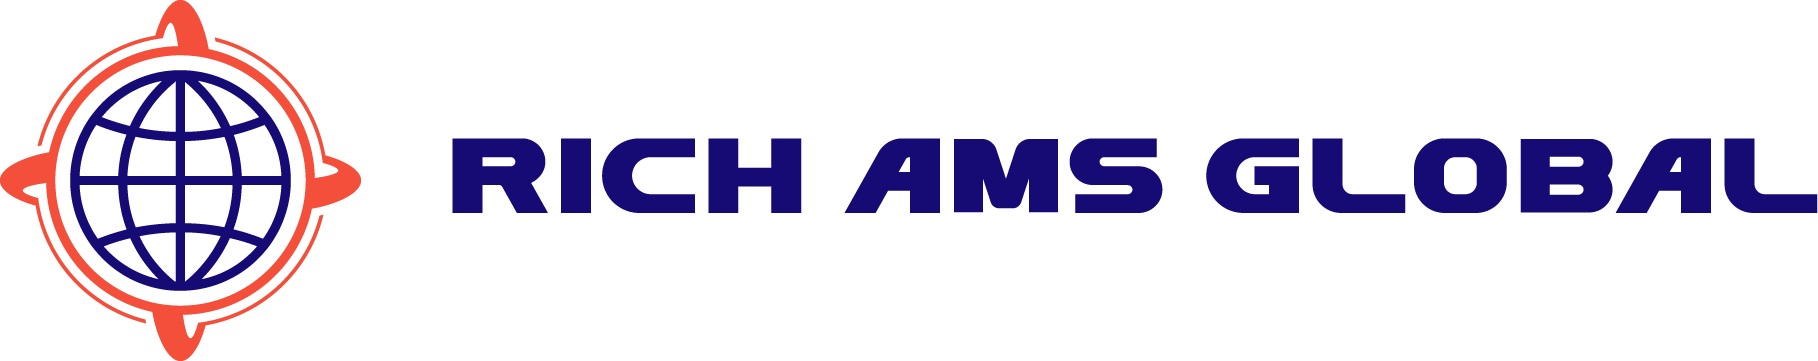 Rich Ams Global Ltd.